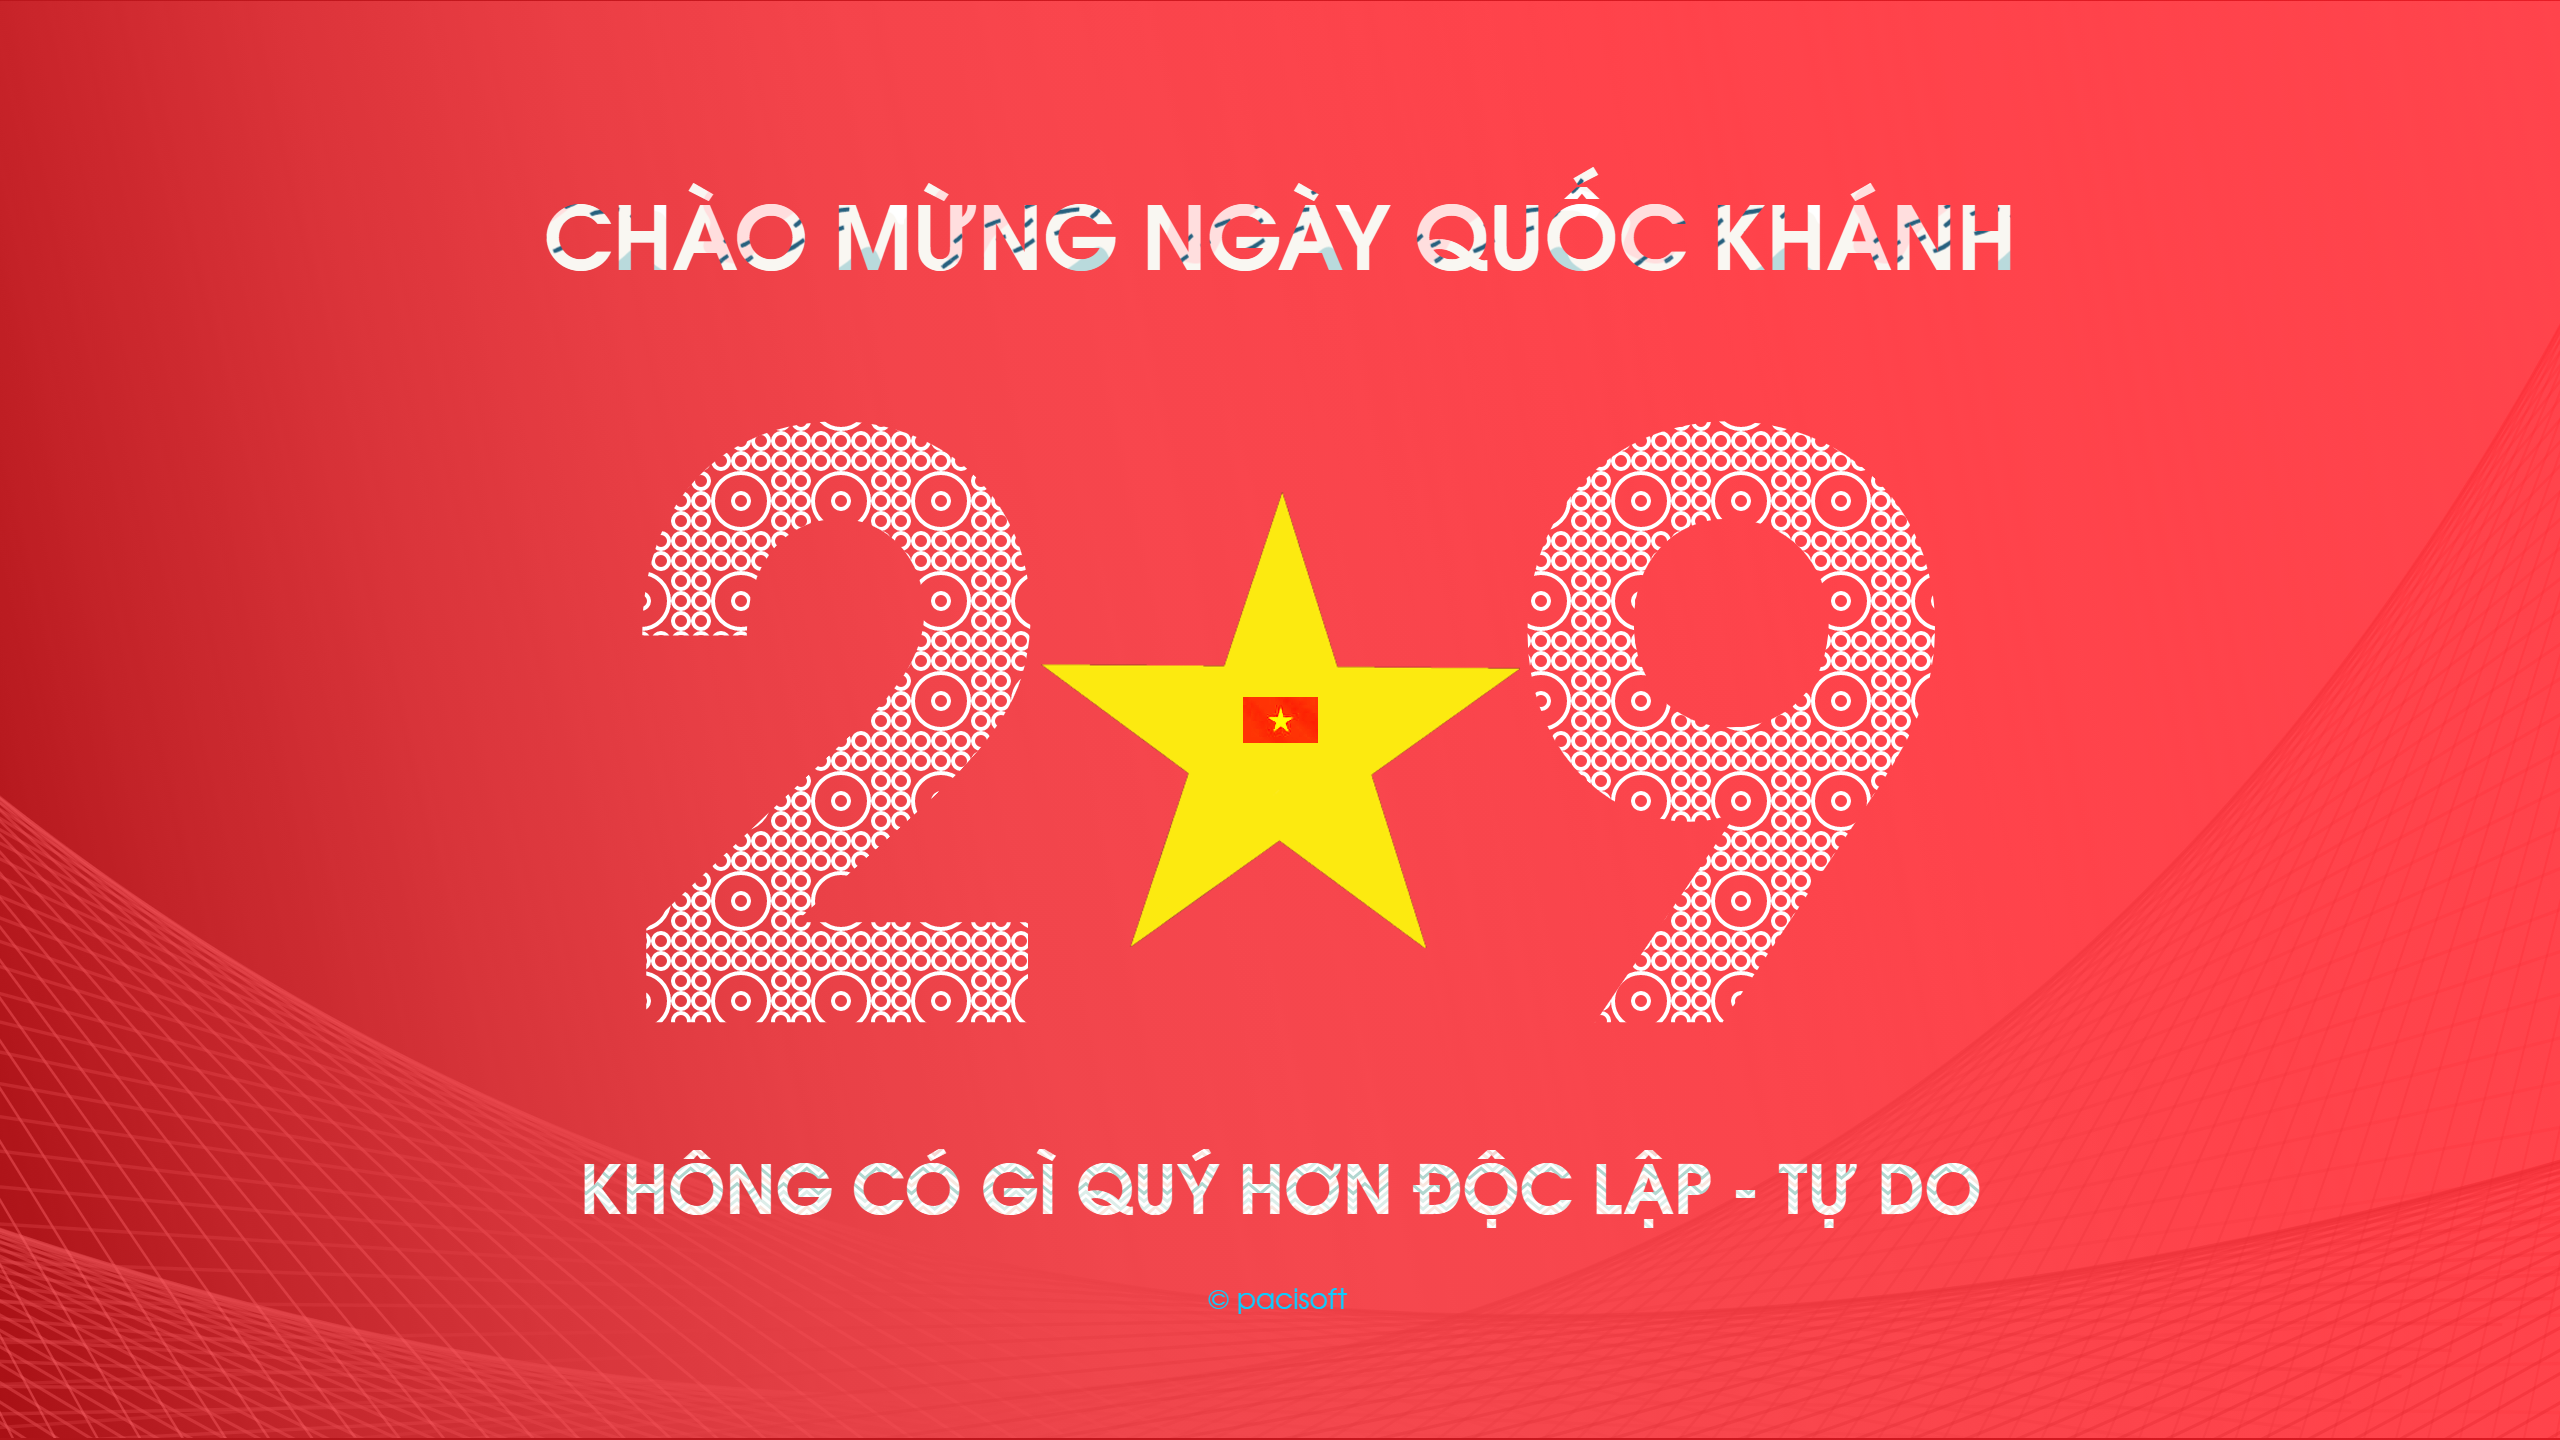 Chào mừng Quốc khánh 2/9: Hãy cùng đón chào ngày Quốc khánh 2/9 với niềm tự hào về đất nước và con người Việt Nam. Ngày hội này không chỉ là kỷ niệm lịch sử quan trọng mà còn là dịp để mỗi người chúng ta cùng tay trong tay xây dựng đất nước ngày một phát triển.